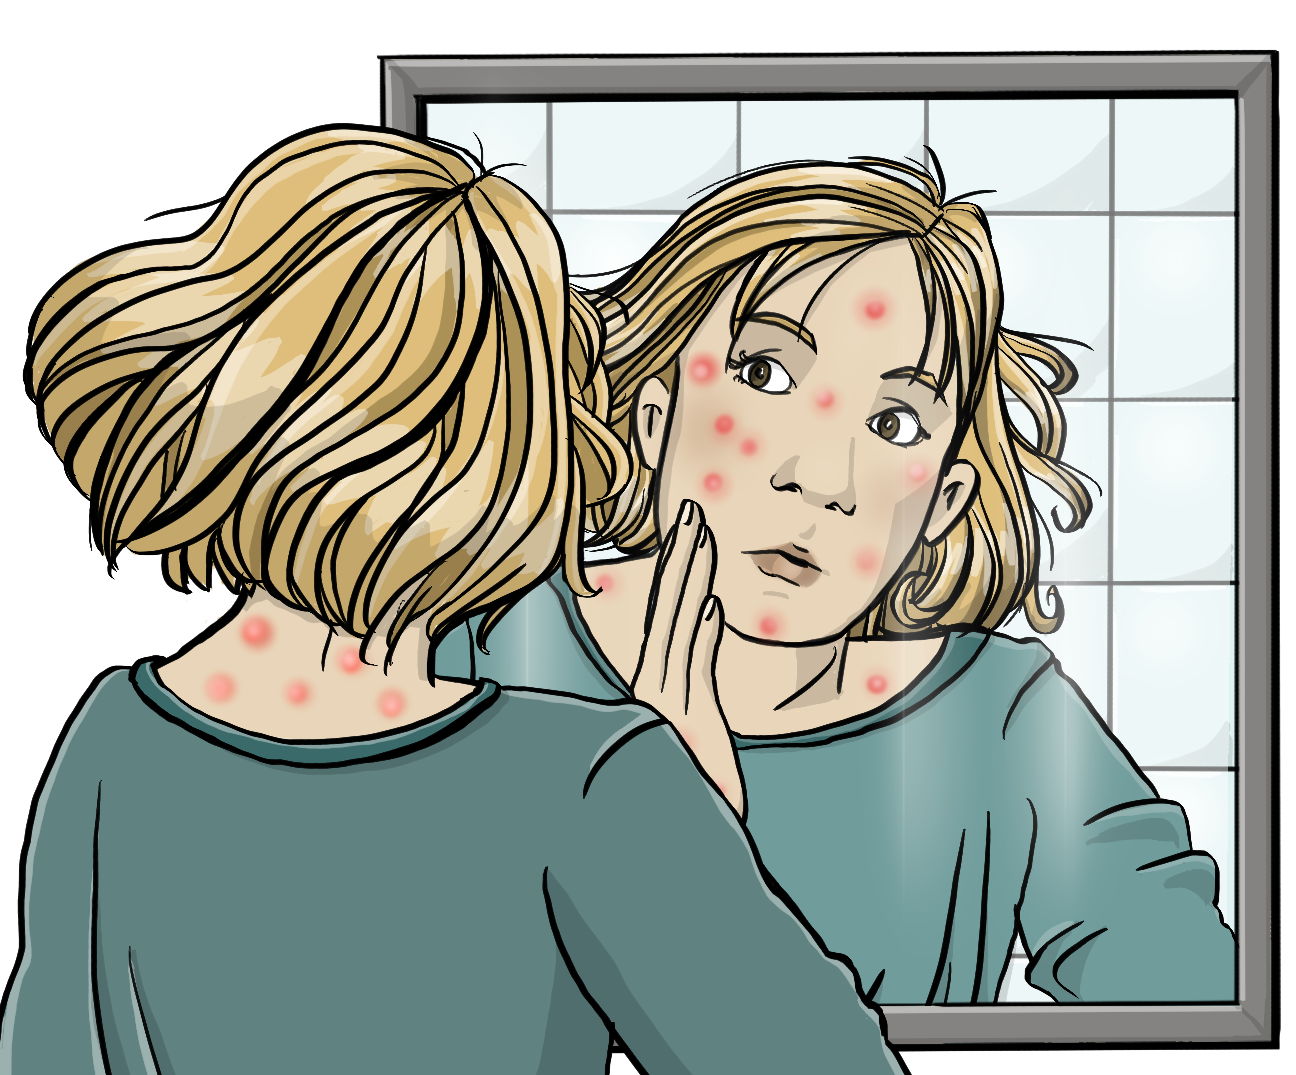 Eine Frau schaut erschrocken in einen Spiegel und hält die Hand an die Wange. In ihrem Gesicht und im Nacken sind viele rote Punkte. 